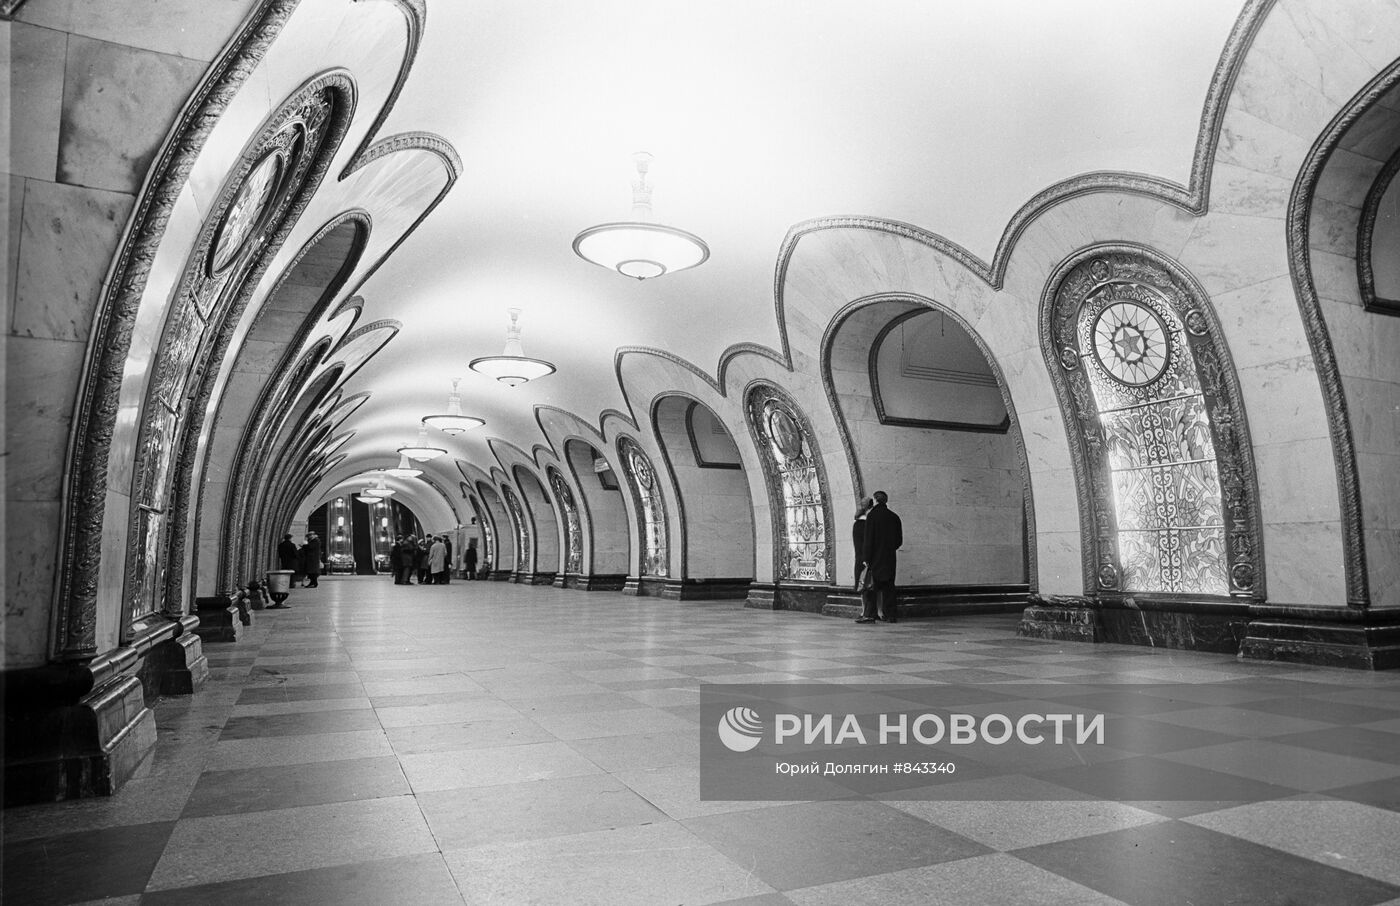 Станция метро "Новослободская"